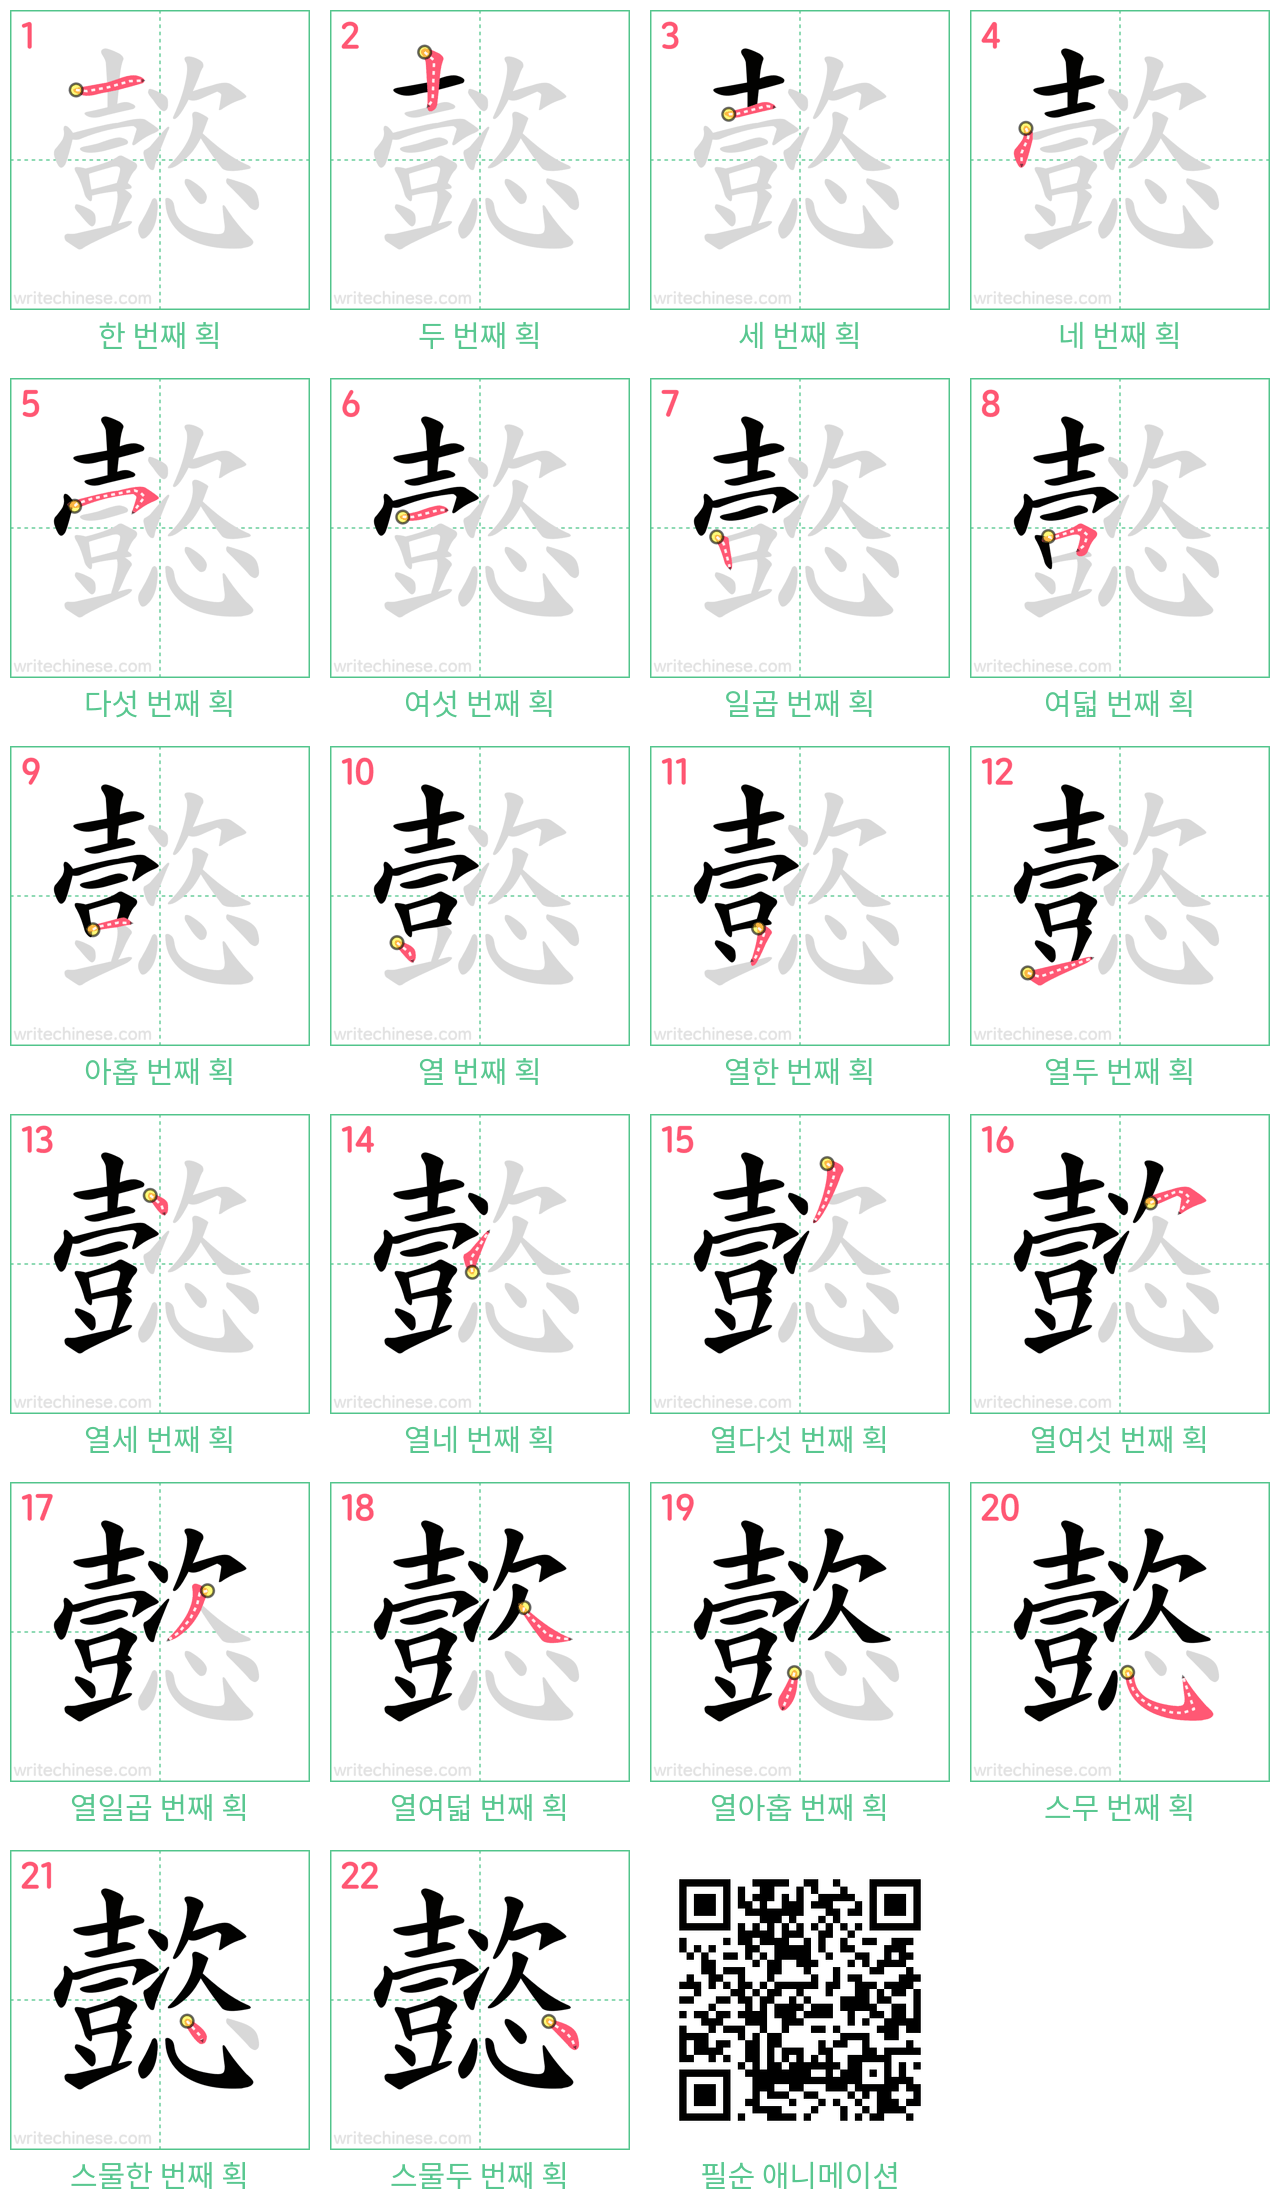 懿 step-by-step stroke order diagrams